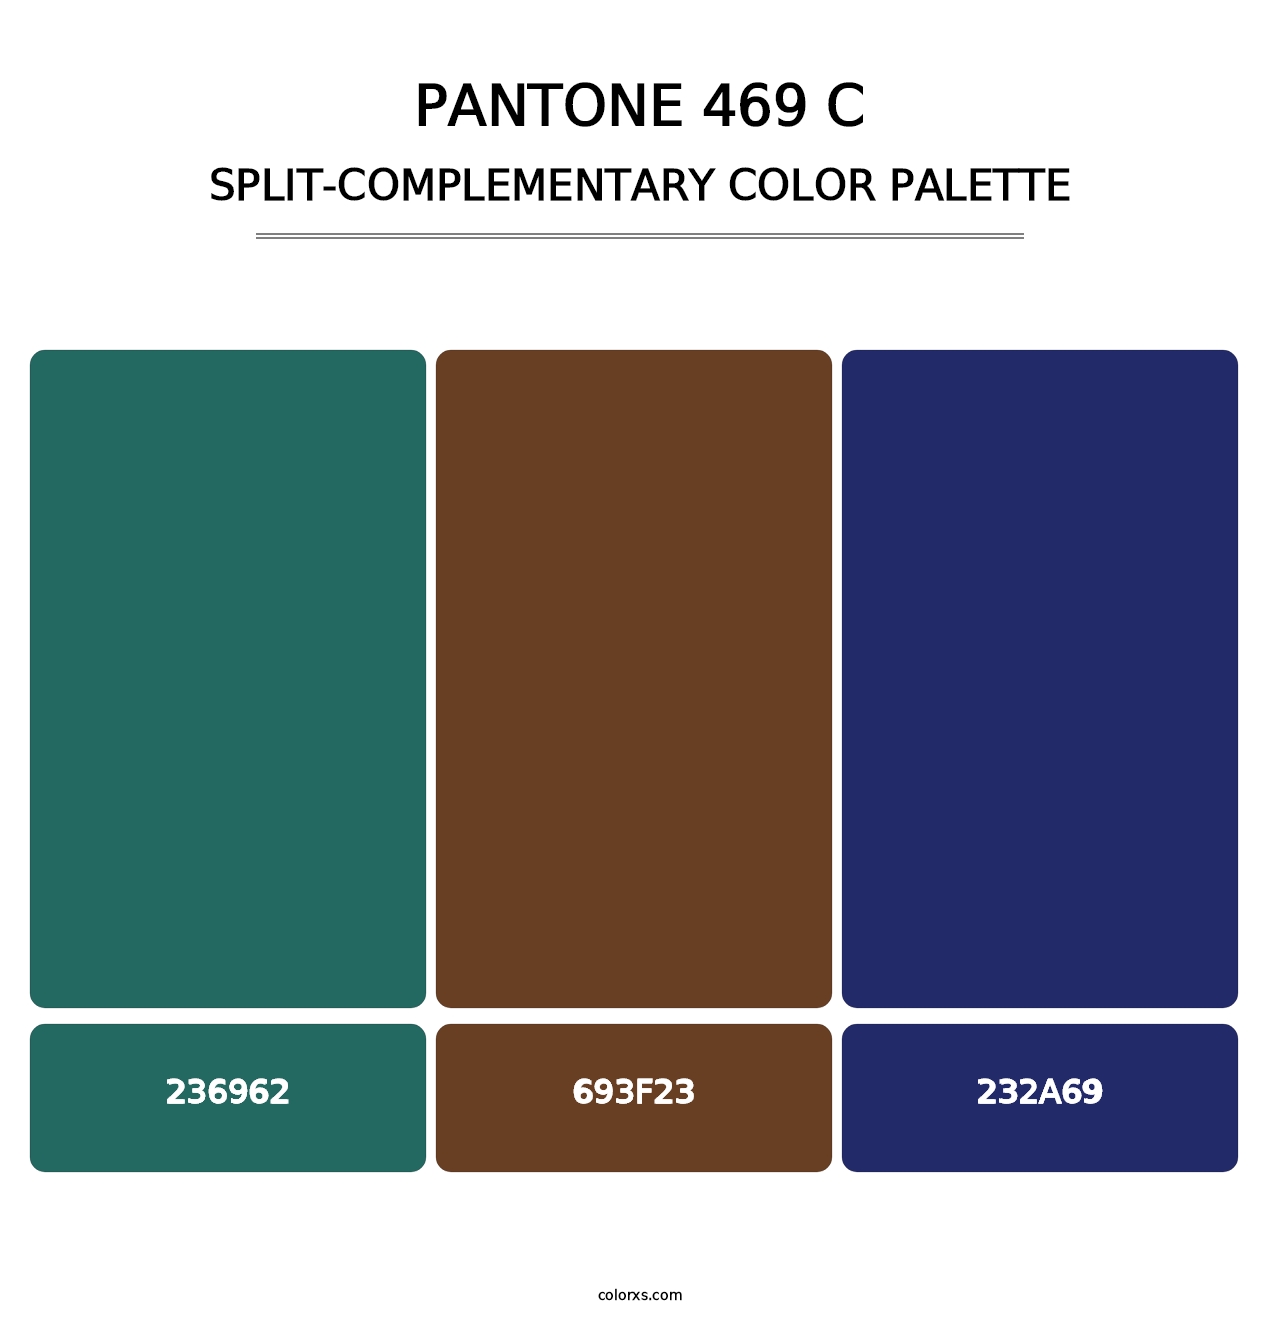 PANTONE 469 C - Split-Complementary Color Palette